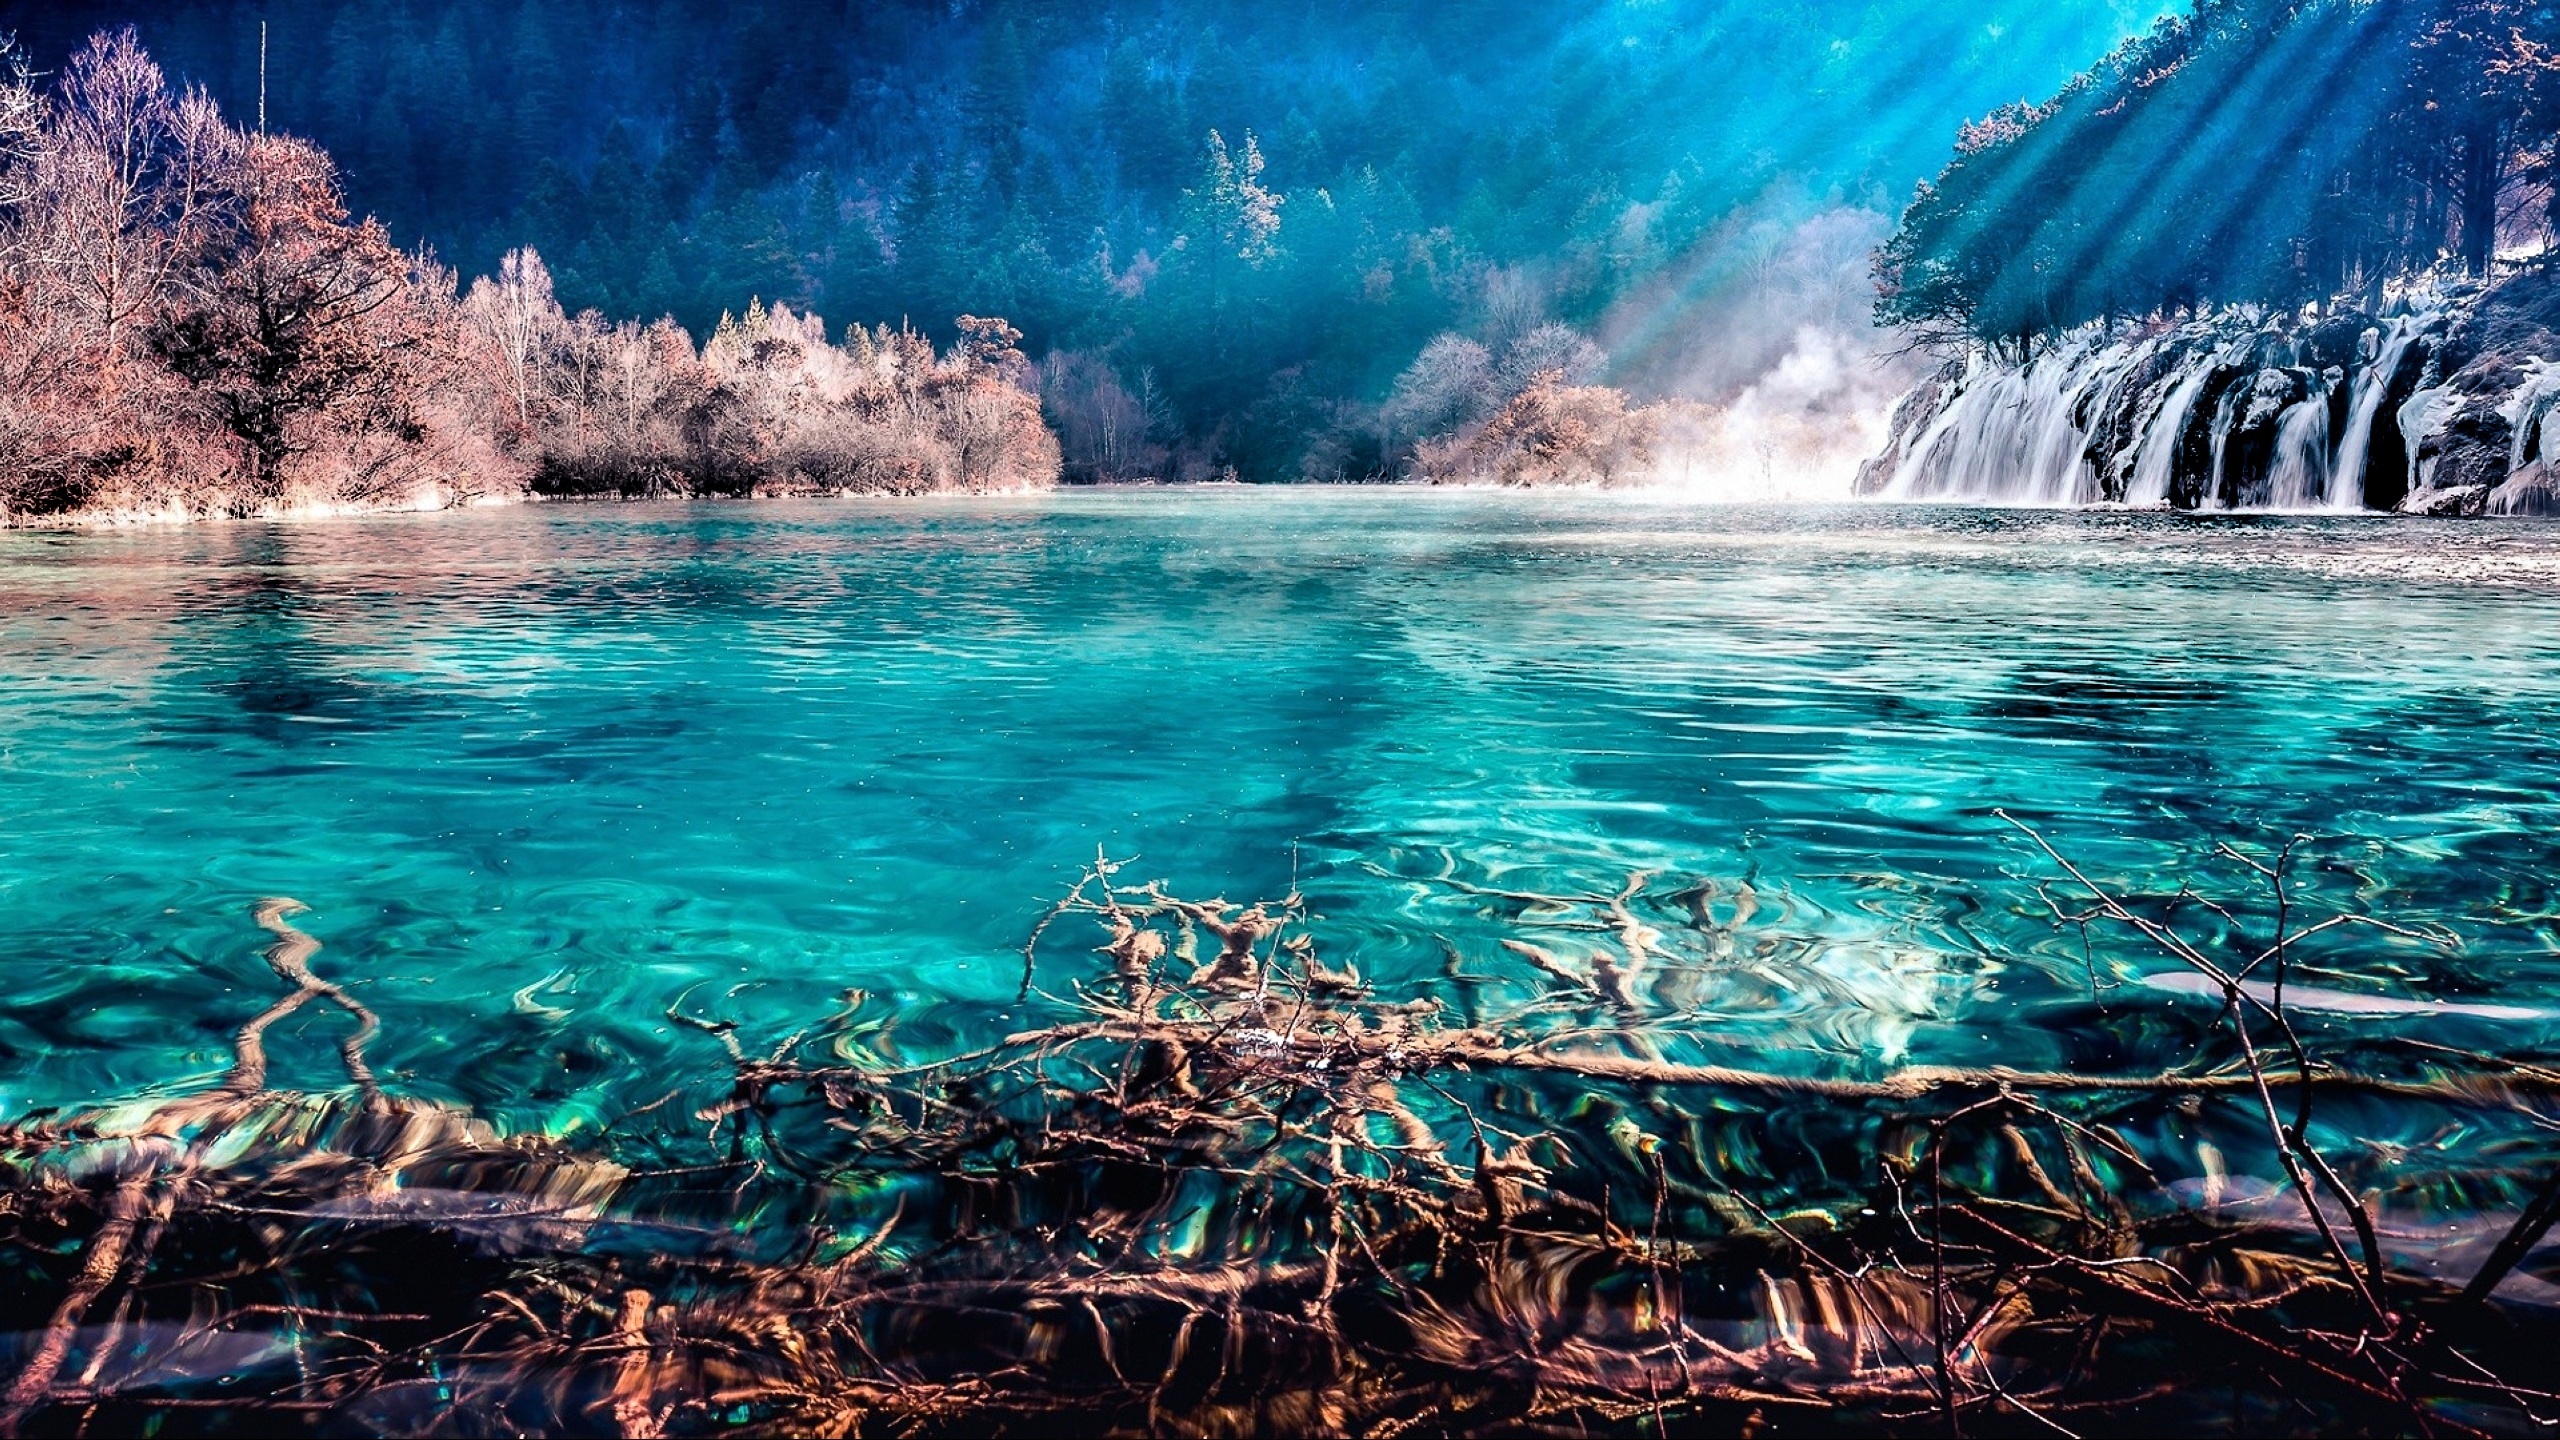 Горы и голубая вода. Бирюзовое озеро, национальный парк Цзючжайгоу, Китай. Водопад « голубая Лагуна» ( г.холм). Водопад в Цзючжайгоу (Китай). Голубая Лагуна Исландия.